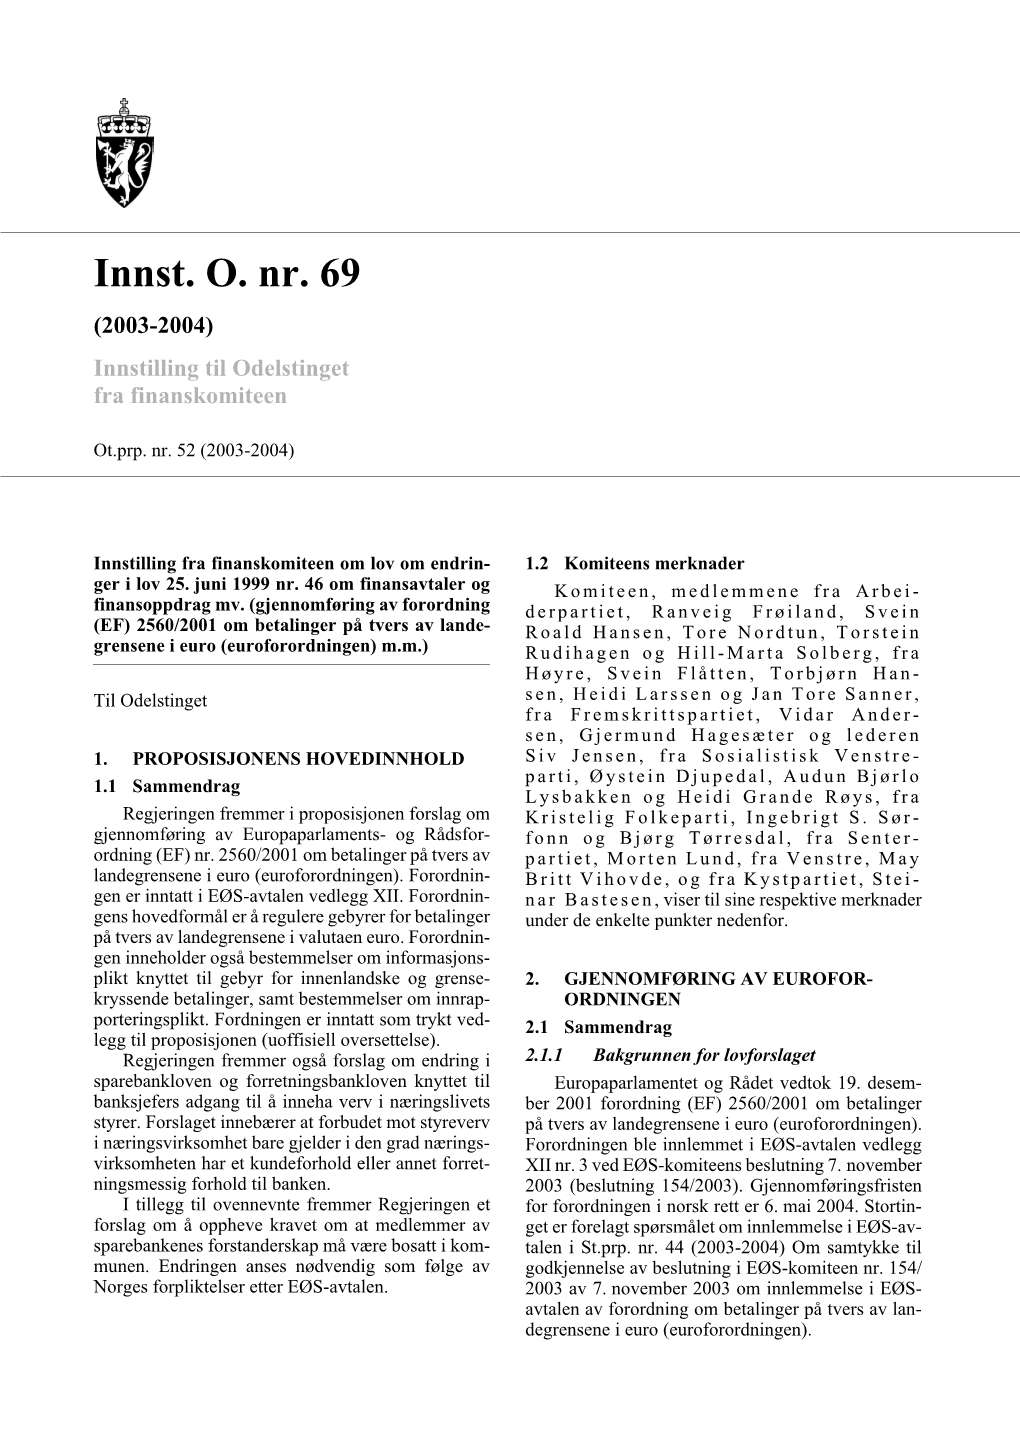 Innst. O. Nr. 69 (2003-2004) Innstilling Til Odelstinget Fra Finanskomiteen